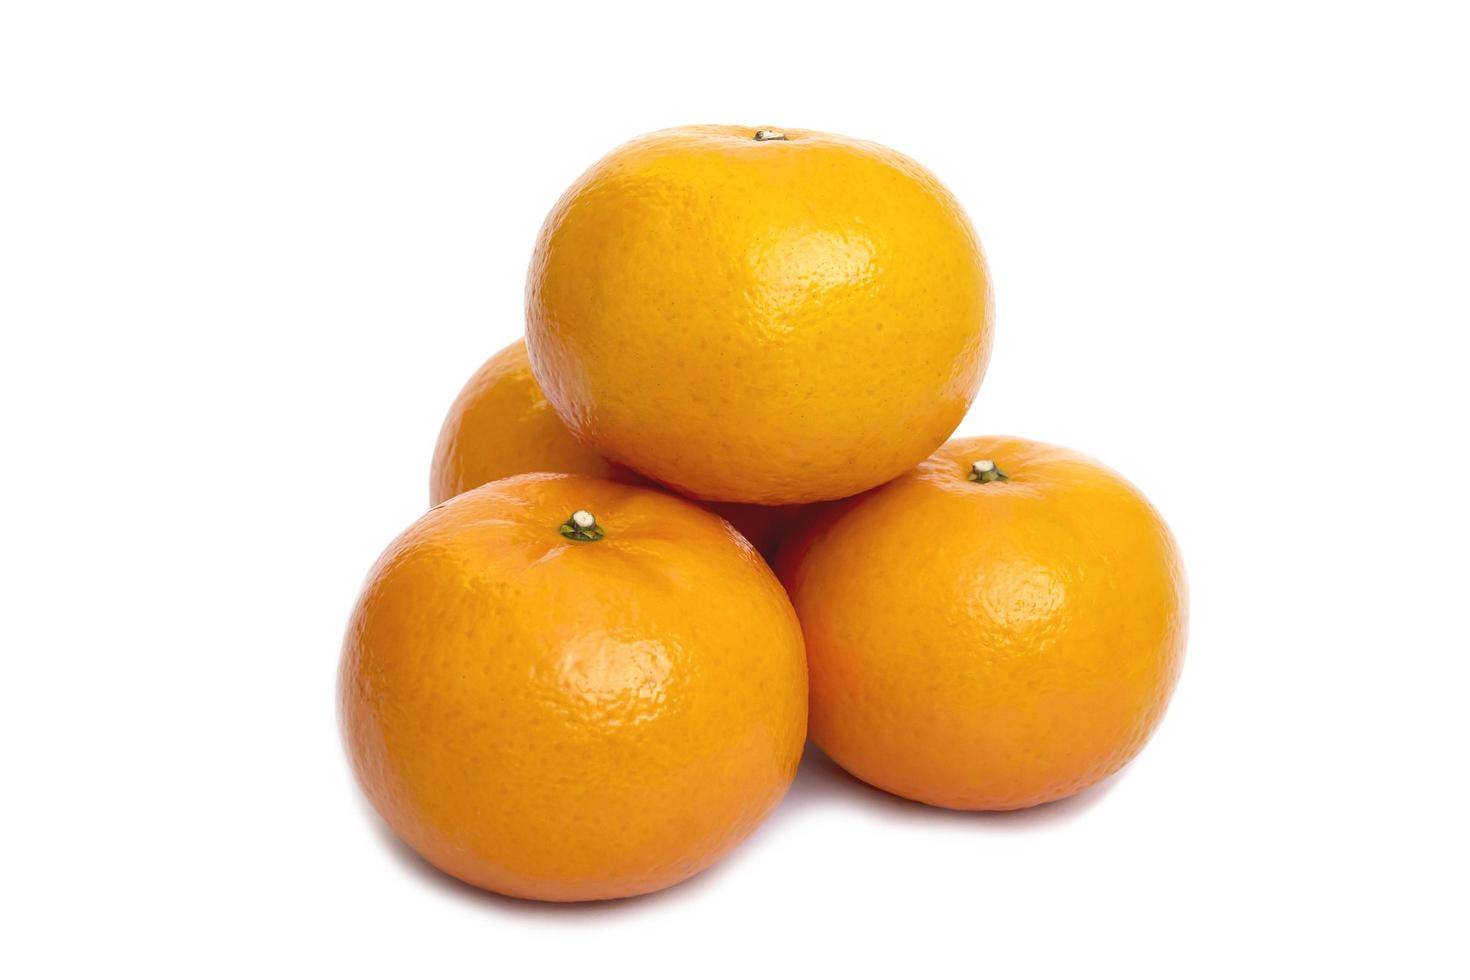 Fresh juicy orange fruit set over white background - tropical orange fruit for background use photo